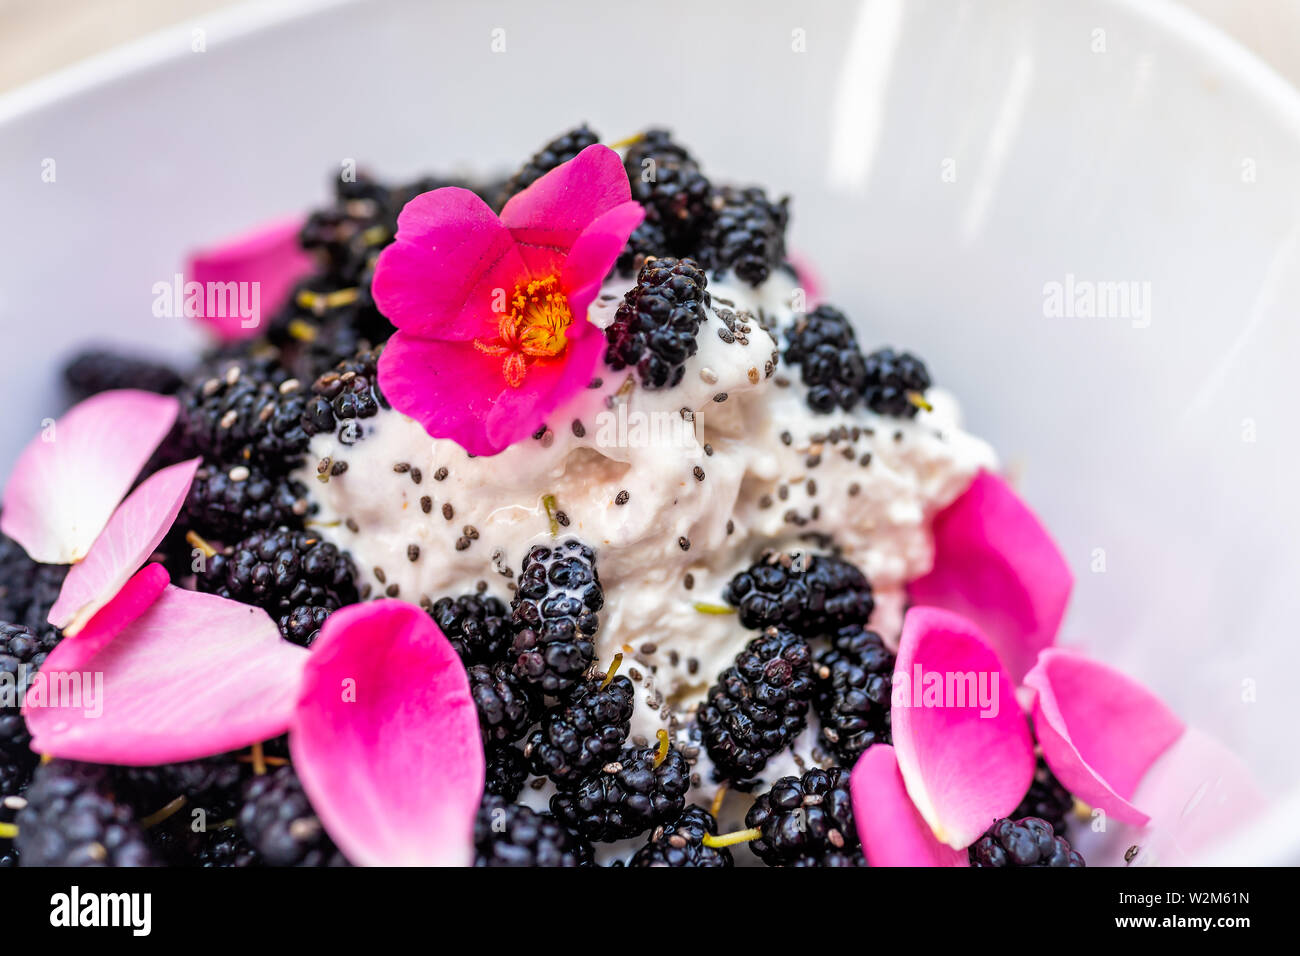 Makro Nahaufnahme des Eis garniert mit frischen schwarzen Maulbeeren Beeren und Chia Samen mit rosa Rosenblüten und roten Portulak Blume Stockfoto